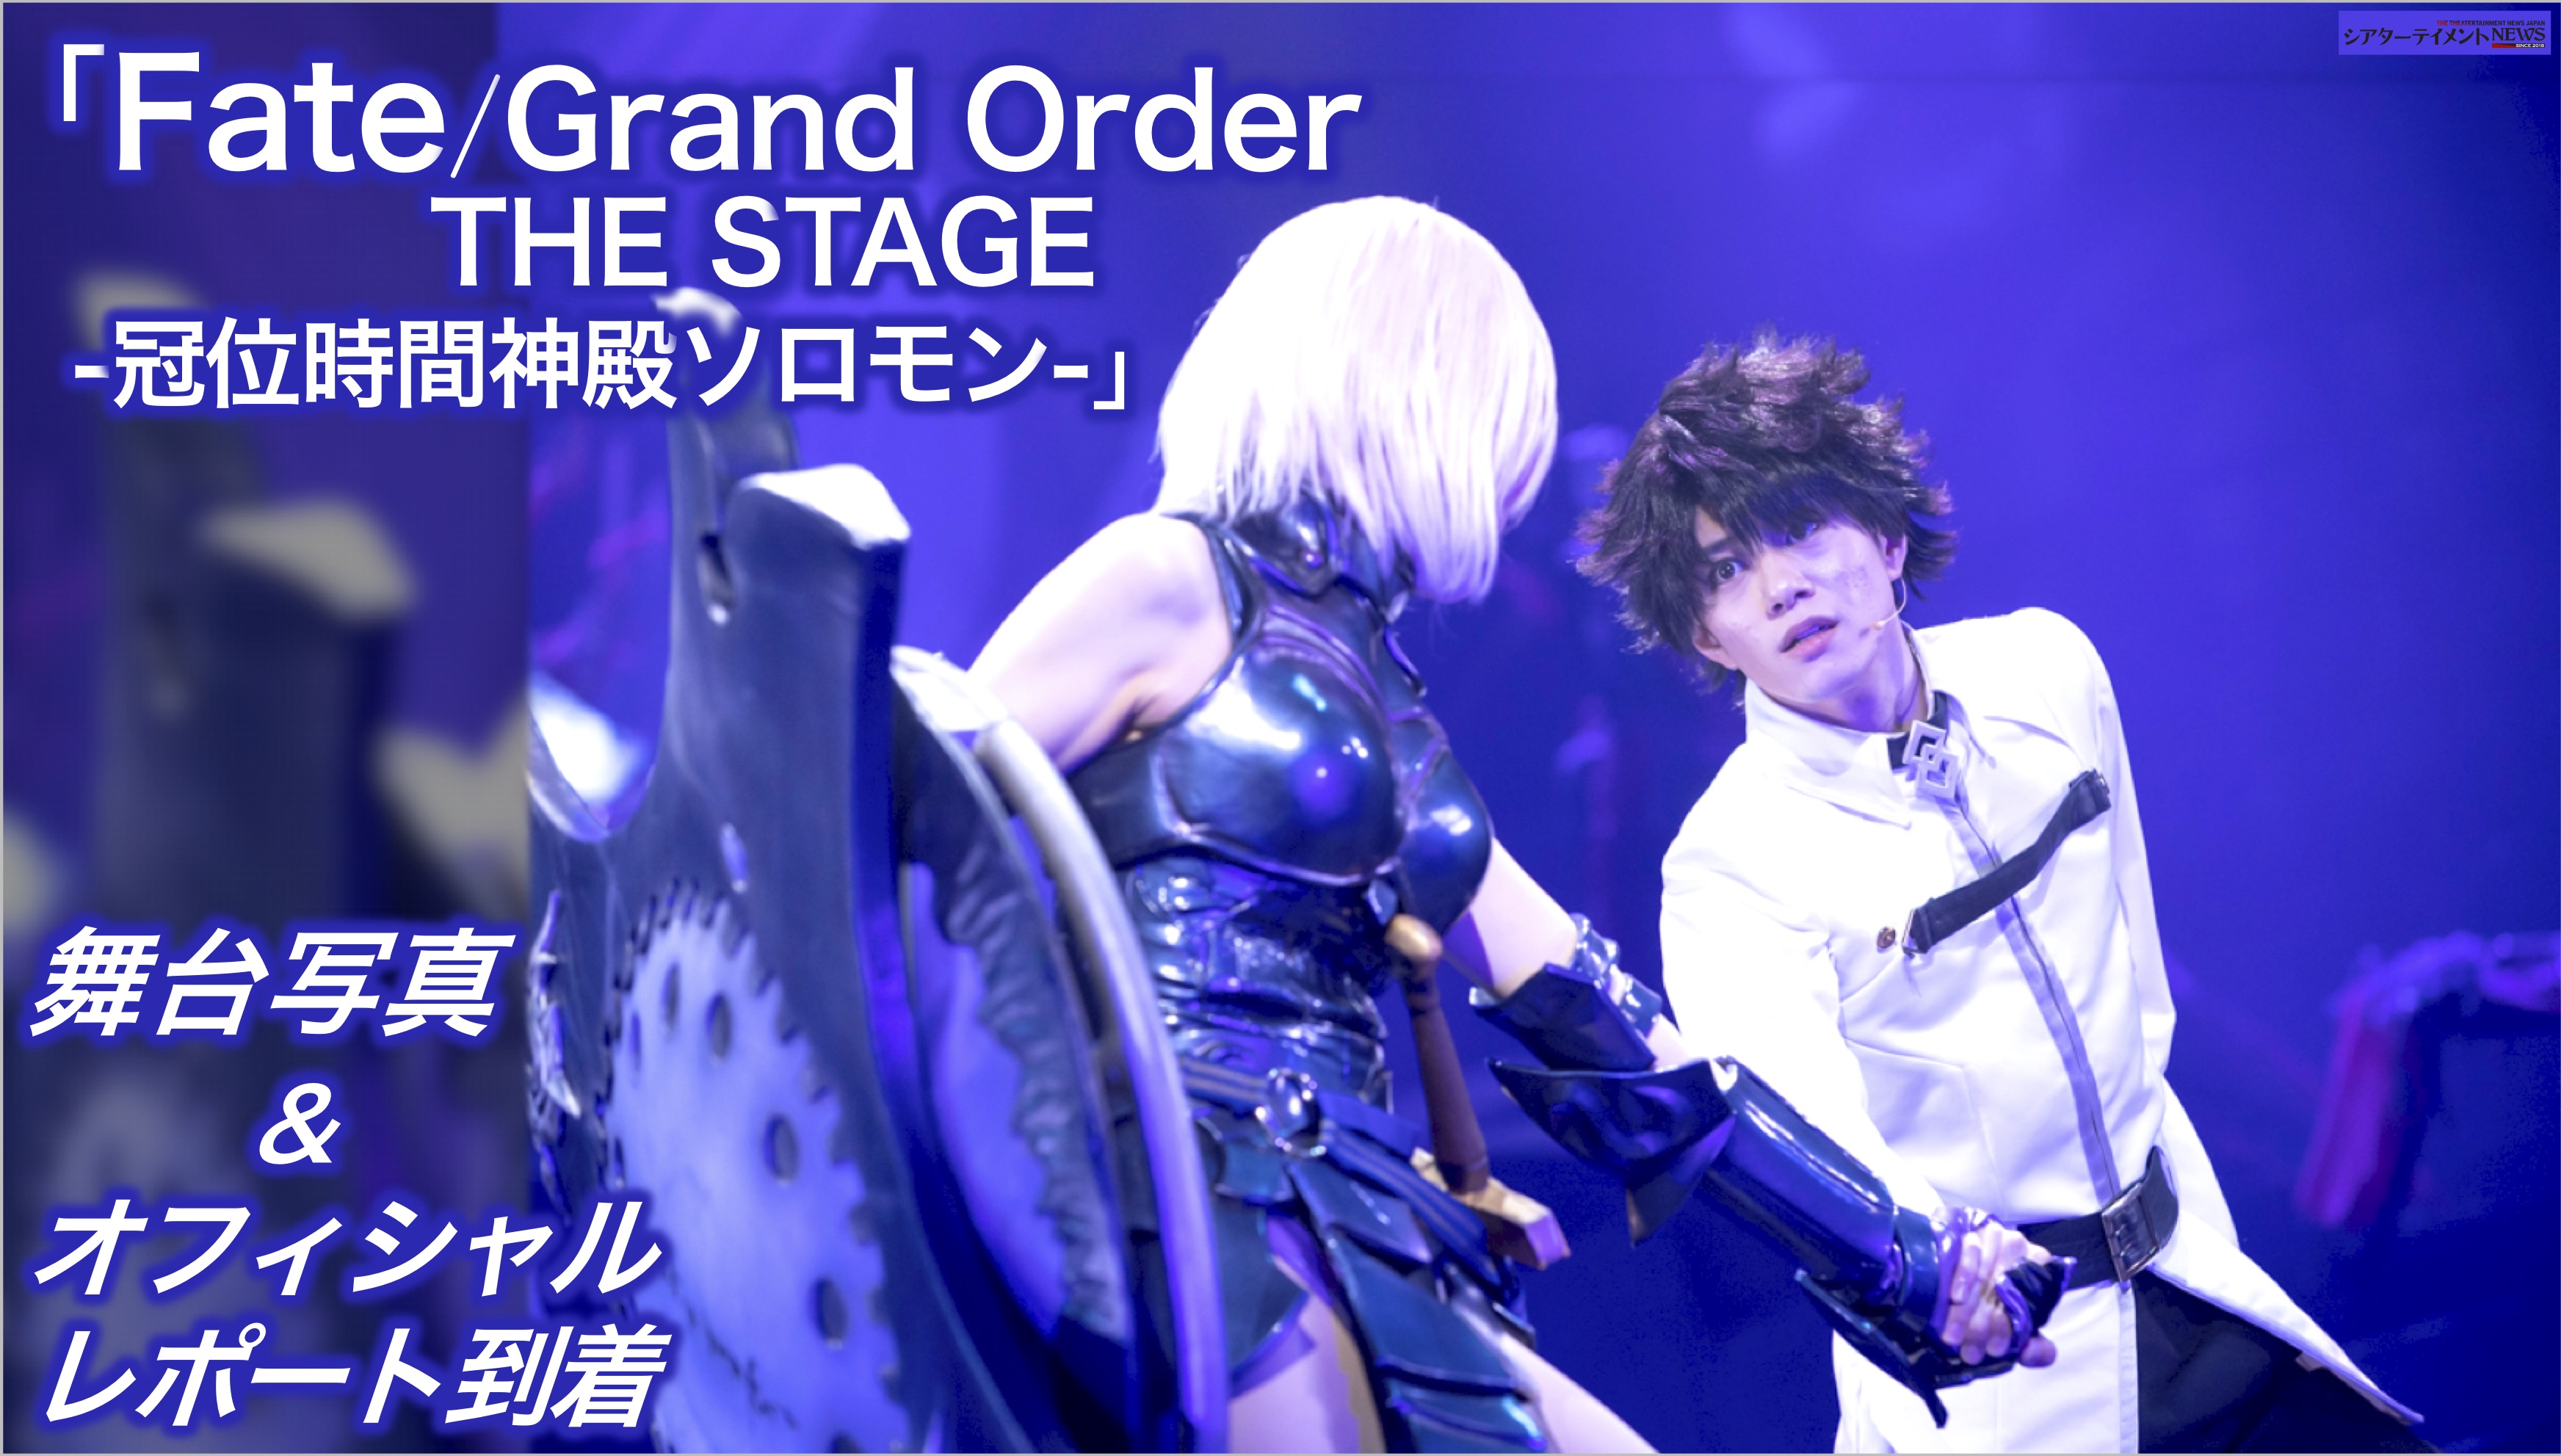 Fate Grand Order The Stage 冠位時間神殿ソロモン ゲネプロレポ 舞台写真到着 シアターテイメントnews